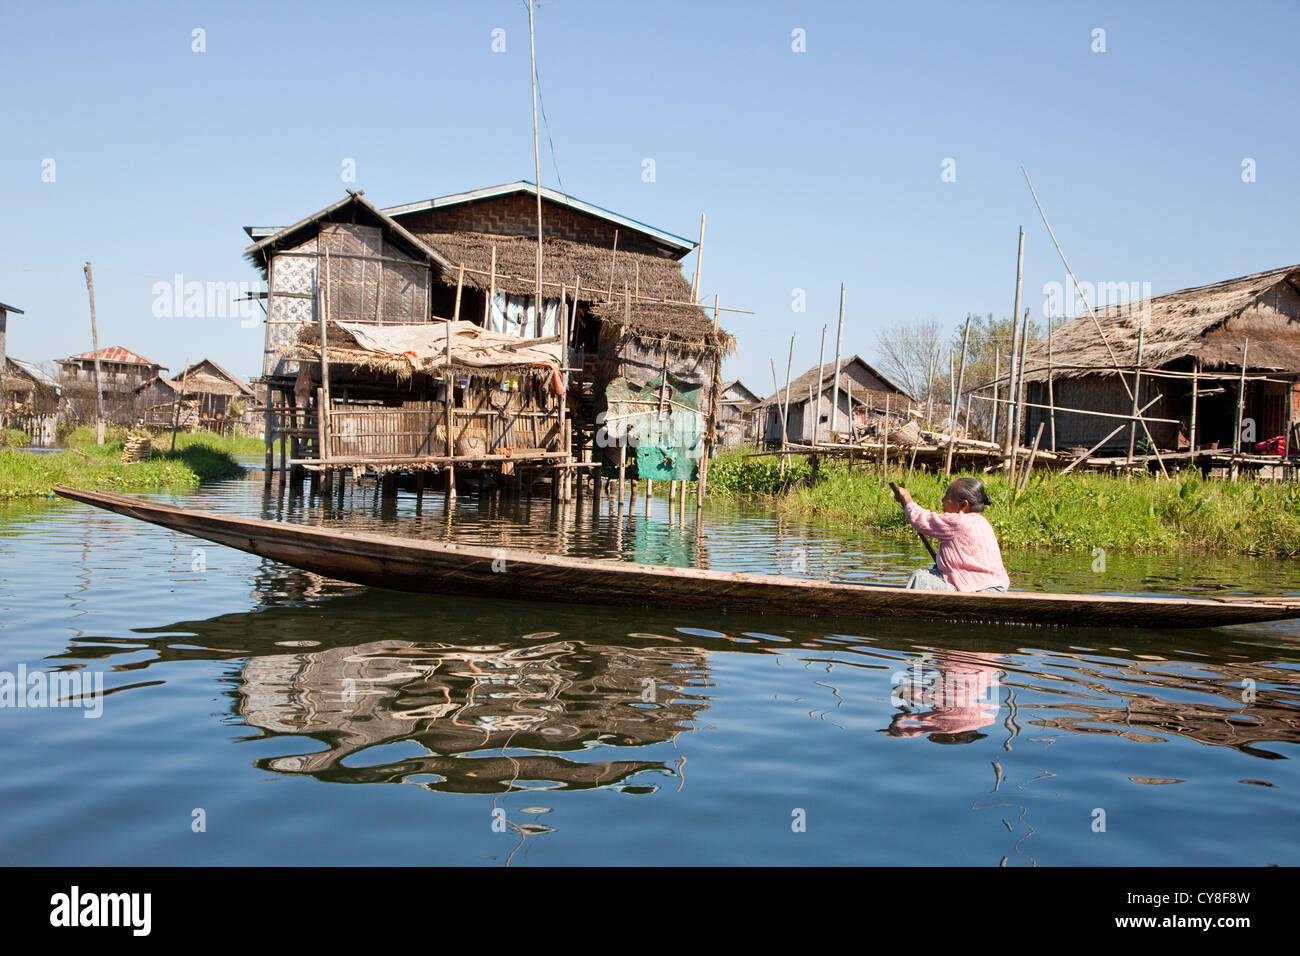 Le Myanmar, Birmanie. Scène de village, femme, bateau à rames, maisons sur pilotis, au Lac Inle, l'État Shan. Banque D'Images